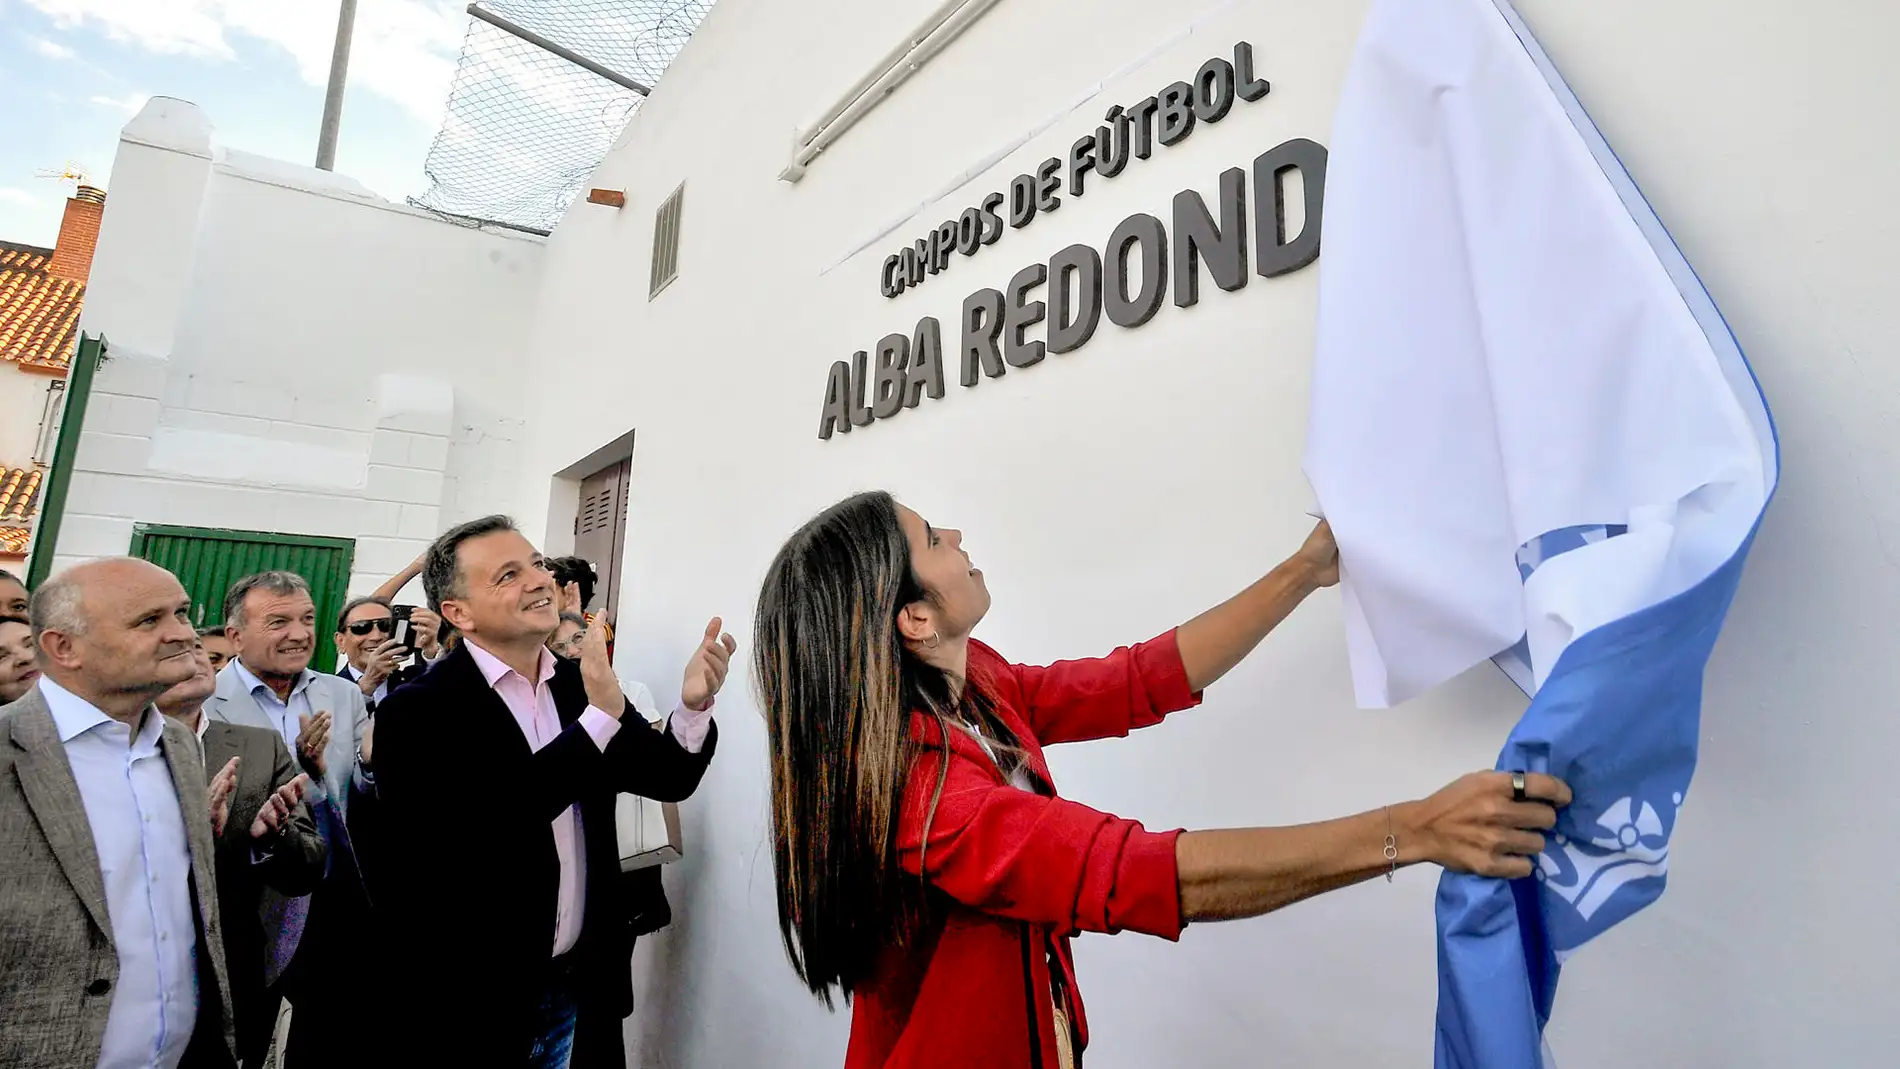 Alba Redondo descubre el rótulo que da su nombre a los campos municipales en Albacete